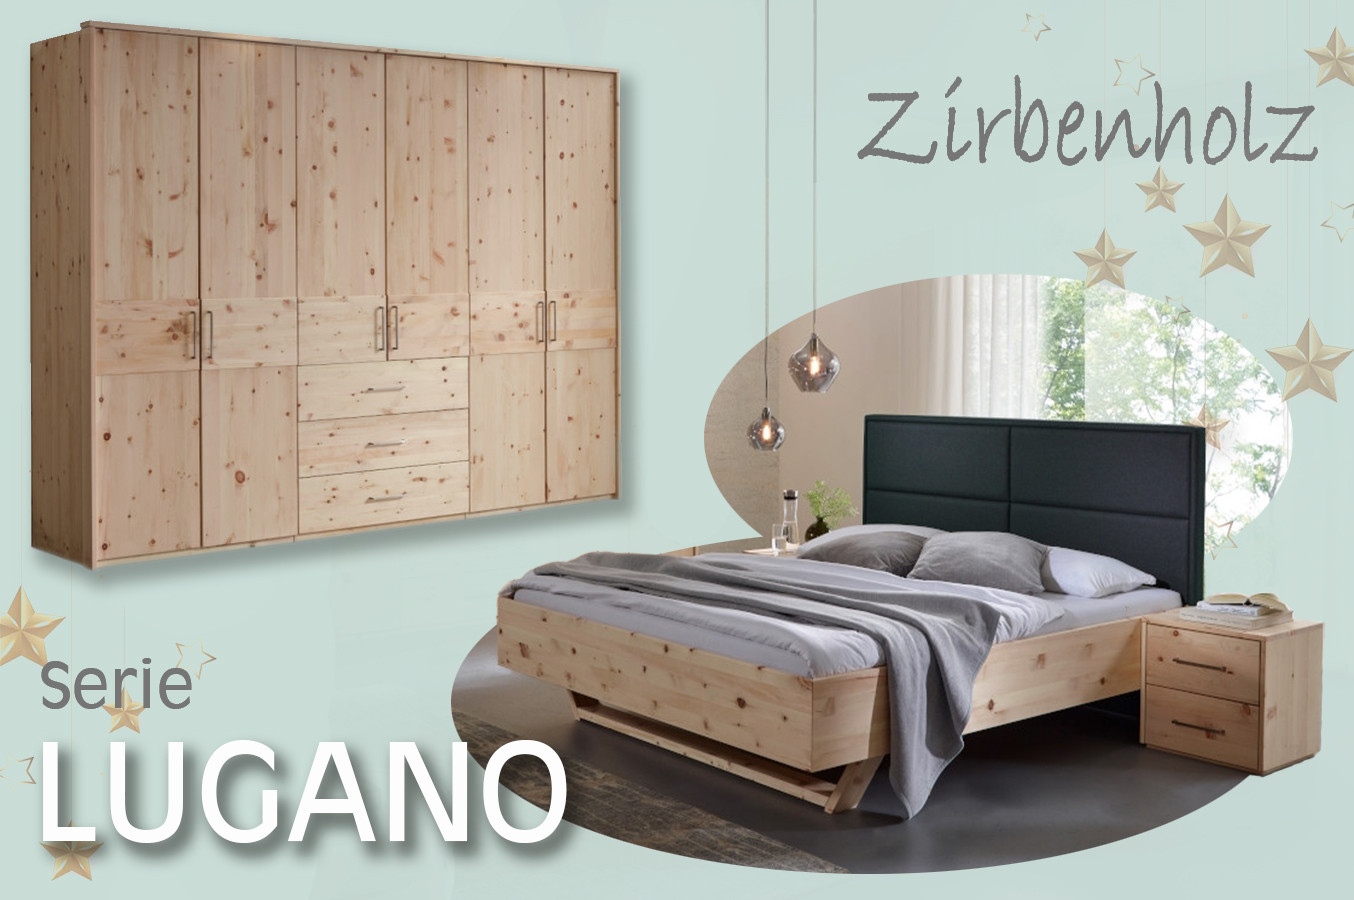  Schlafzimmer Lugano aus Zirbenholz fördert die Gesundheit, schafft Wohlfühlatmosphäre   